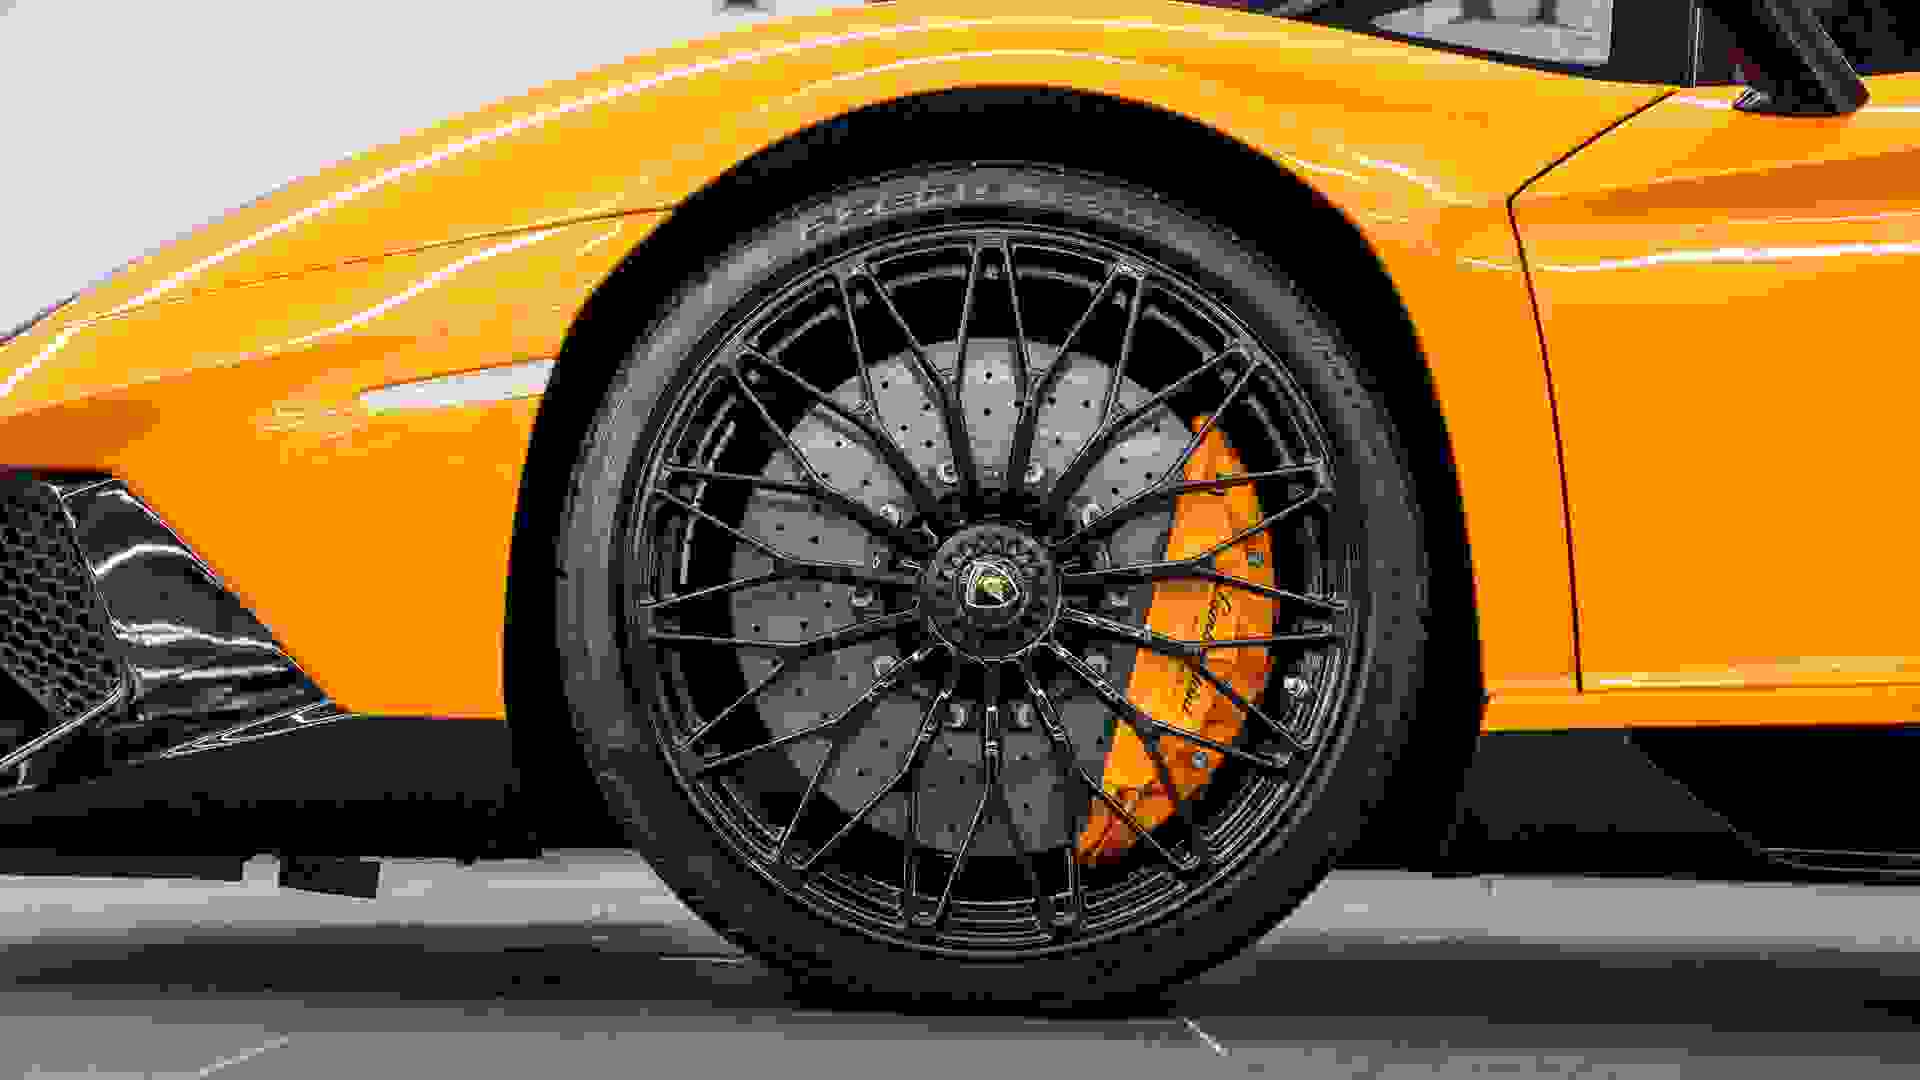 Lamborghini AVENTADOR SV Photo 659b8b28-e853-4b97-83d4-f50287d7b4ea.jpg